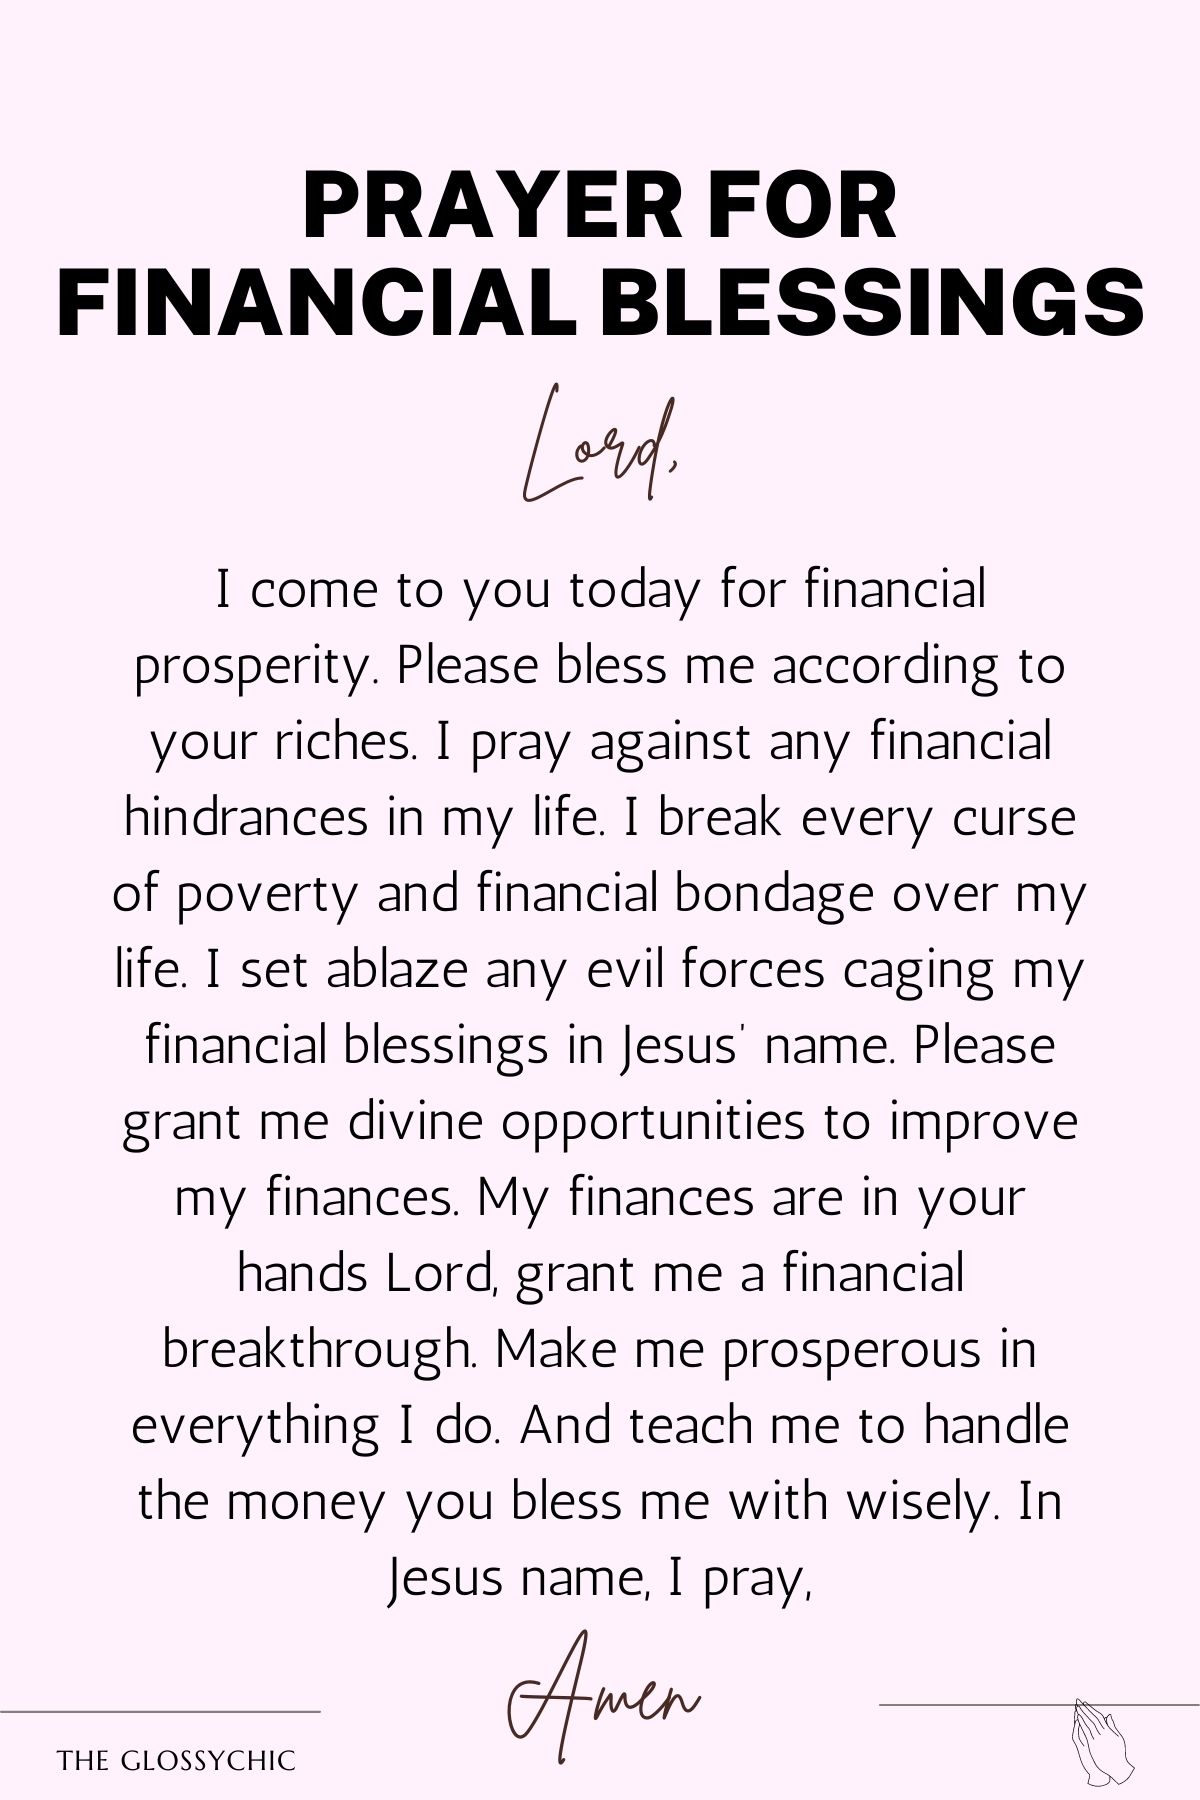 Prayer for financial blessings